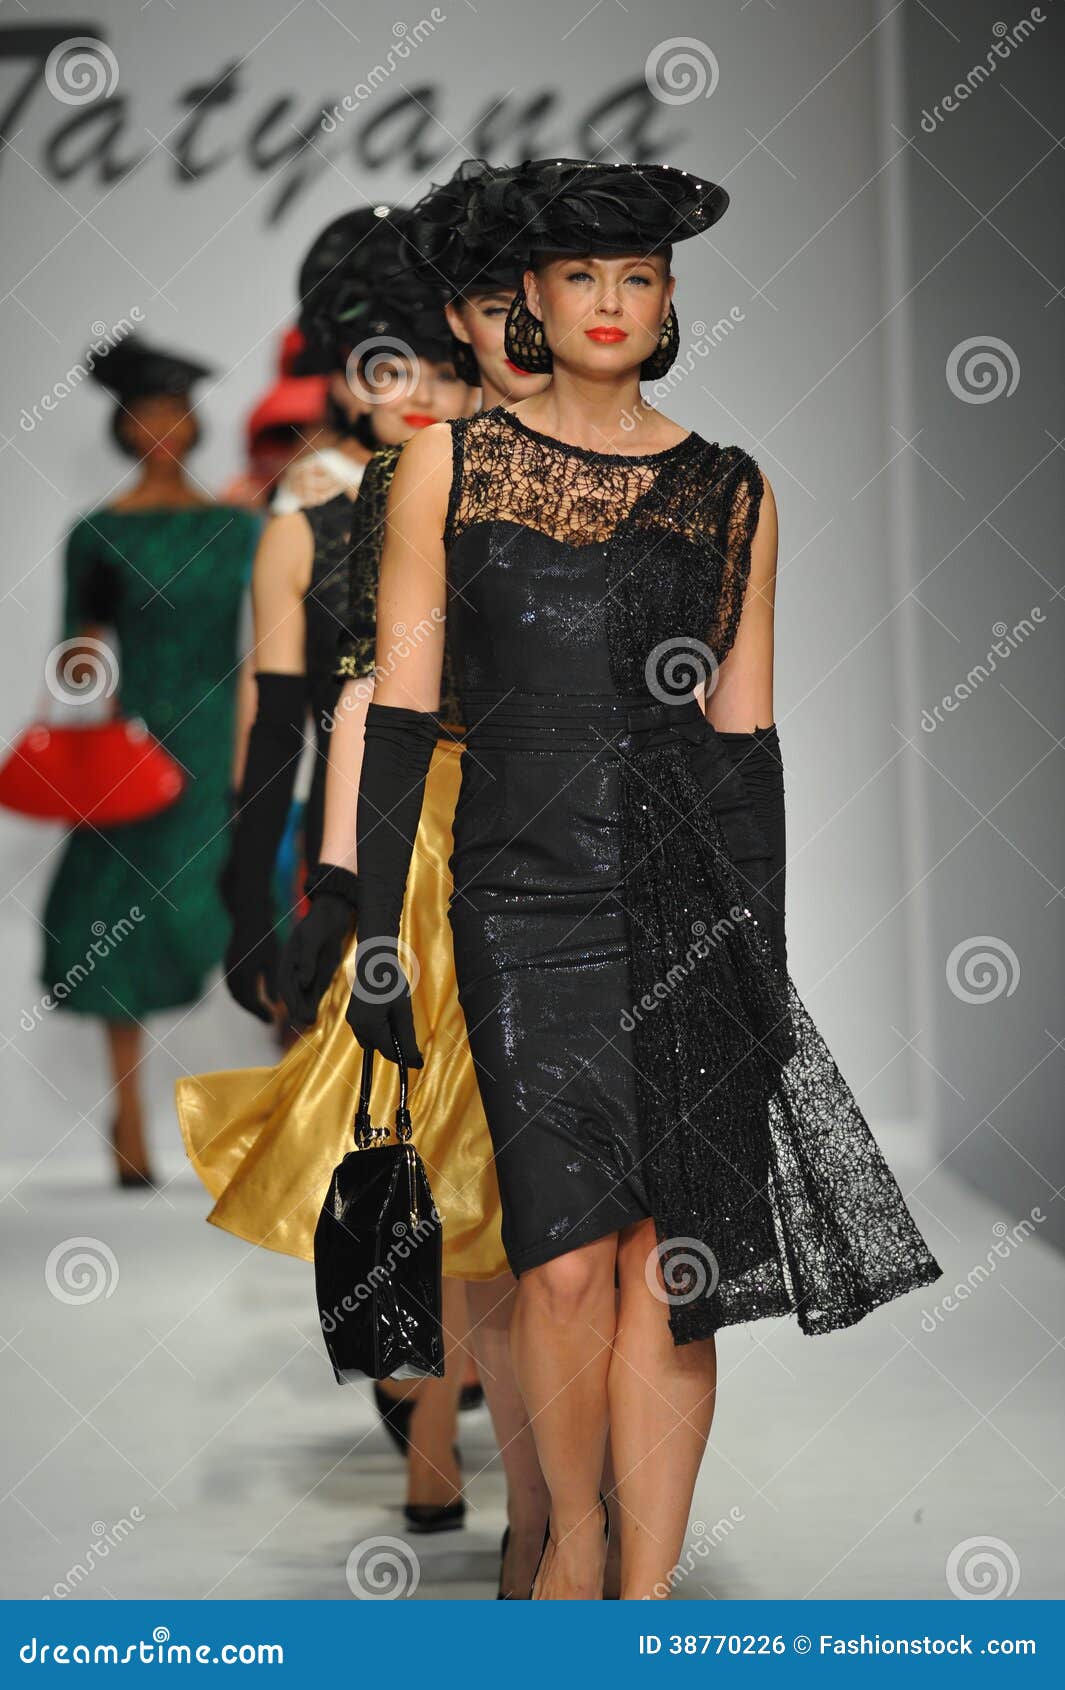 Models Walk the Runway at Tatyana Designs Editorial Photo - Image of ...